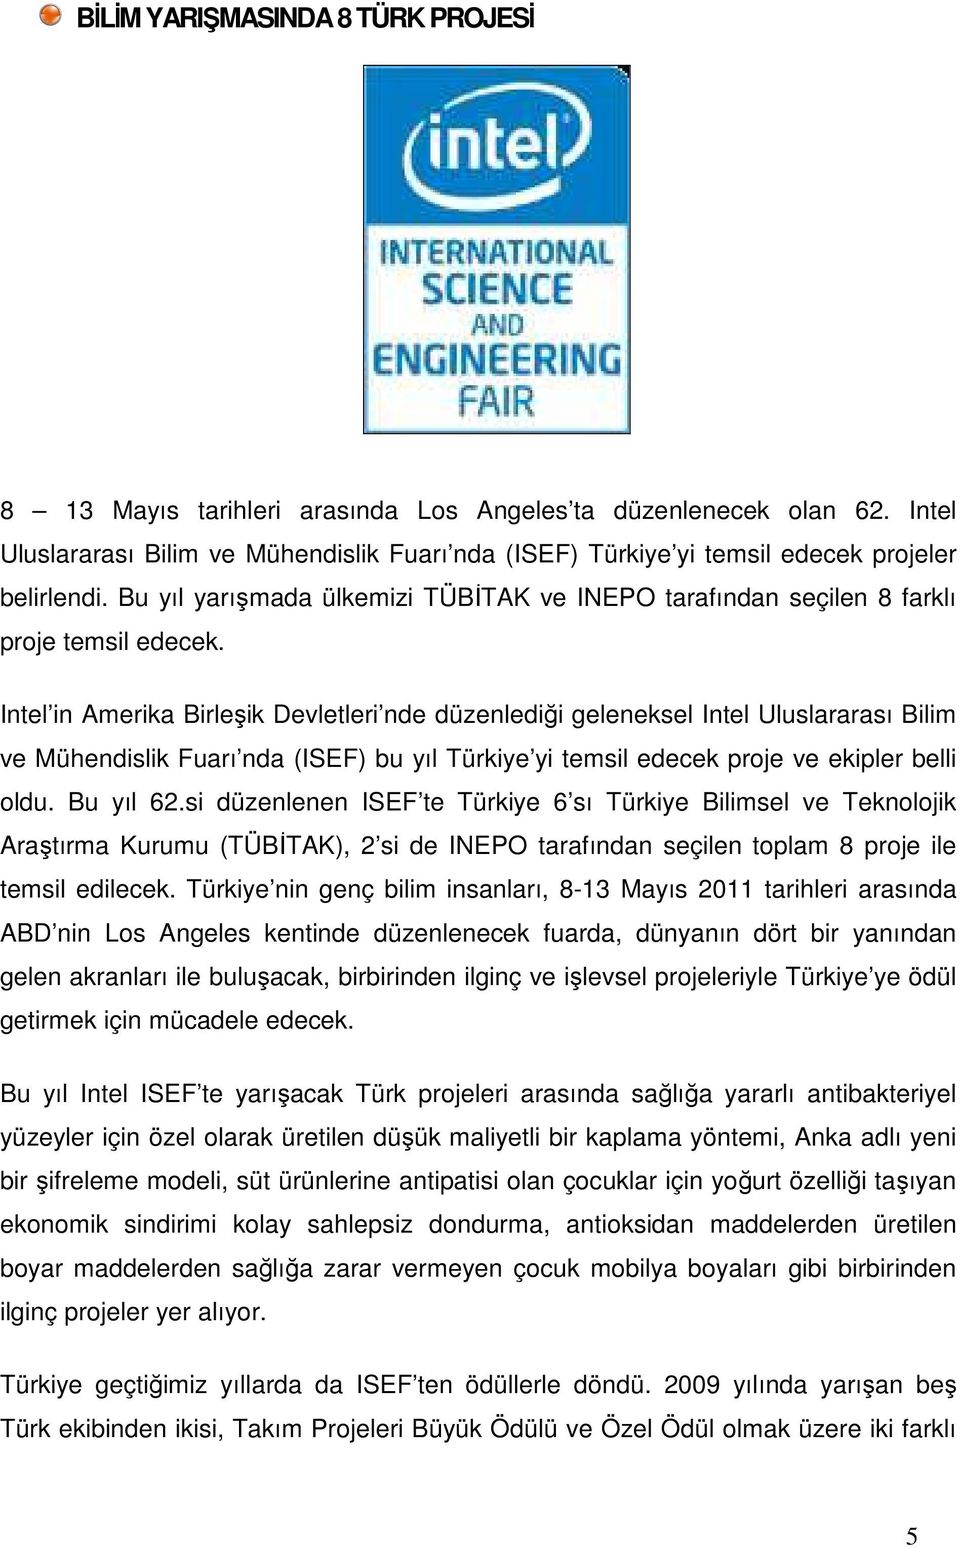 Intel in Amerika Birleşik Devletleri nde düzenlediği geleneksel Intel Uluslararası Bilim ve Mühendislik Fuarı nda (ISEF) bu yıl Türkiye yi temsil edecek proje ve ekipler belli oldu. Bu yıl 62.